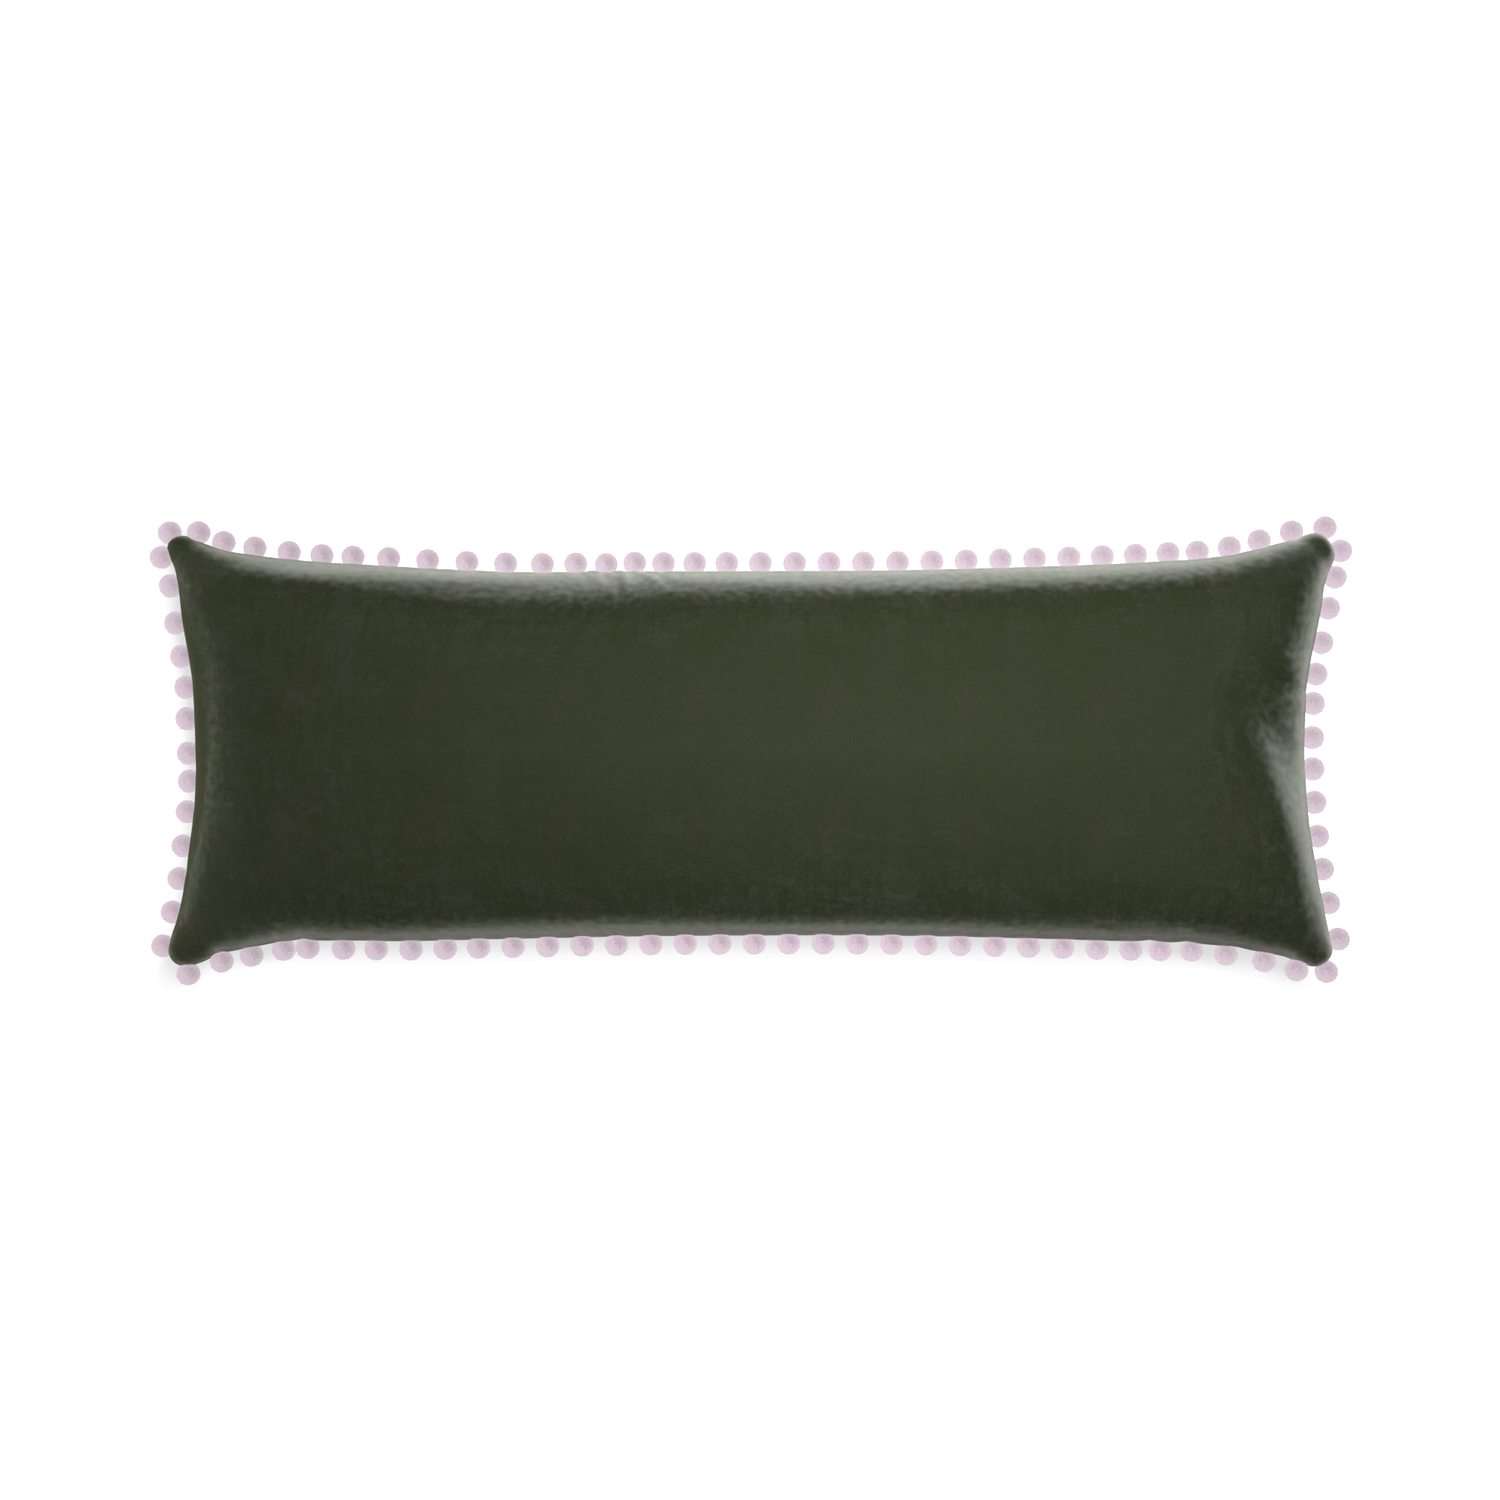 rectangle fern green velvet pillow with lilac pom poms